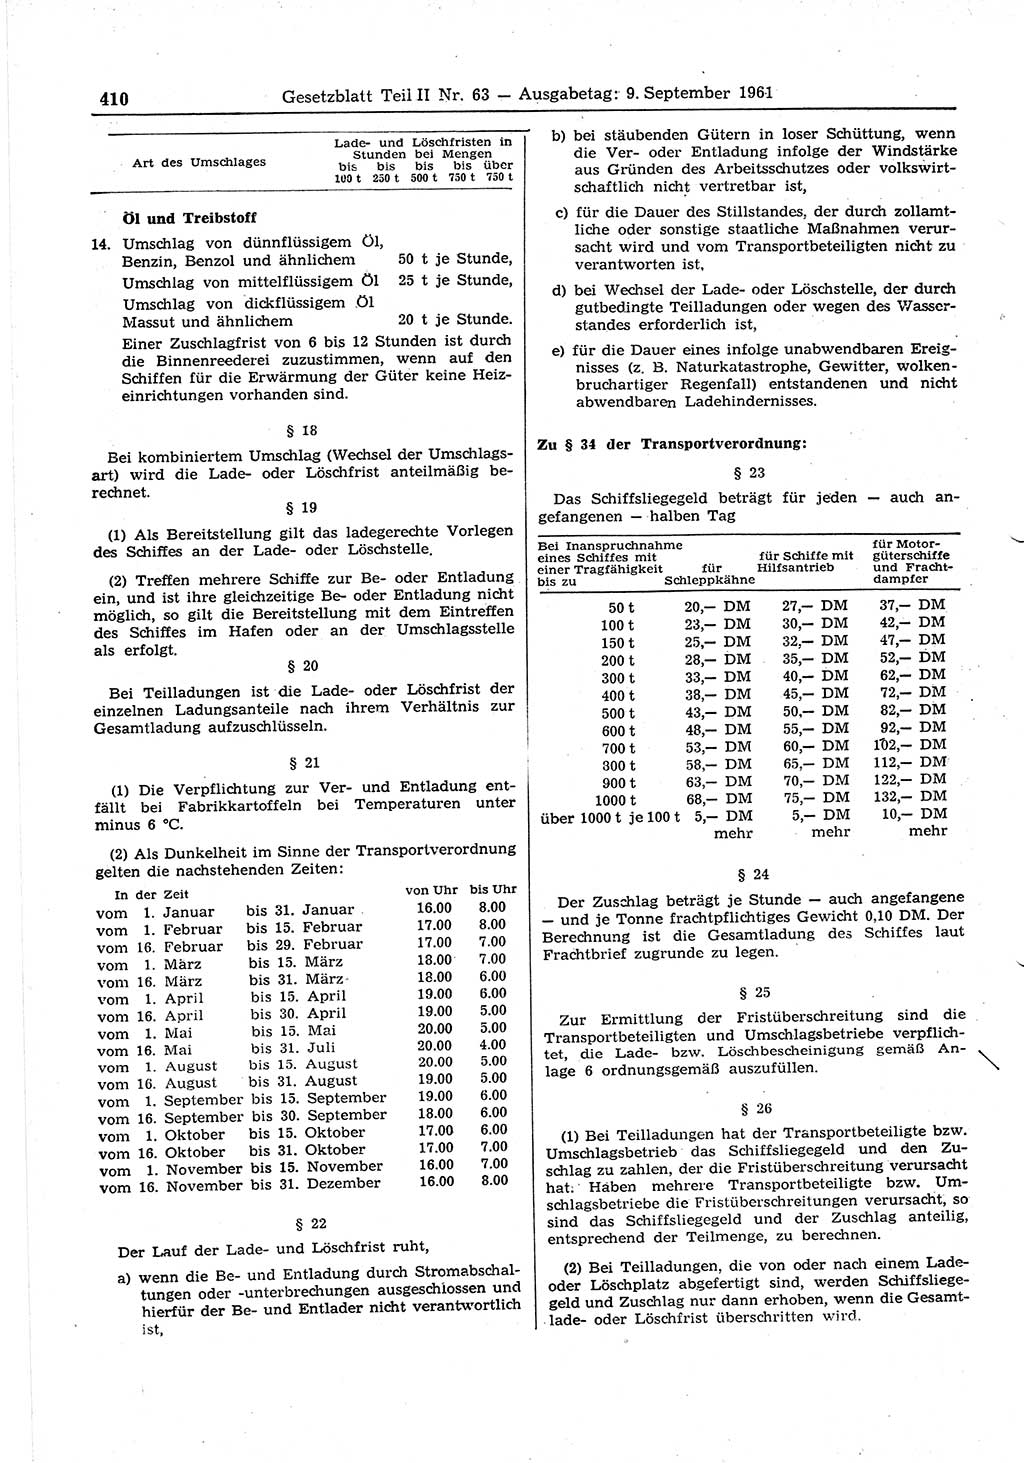 Gesetzblatt (GBl.) der Deutschen Demokratischen Republik (DDR) Teil ⅠⅠ 1961, Seite 410 (GBl. DDR ⅠⅠ 1961, S. 410)